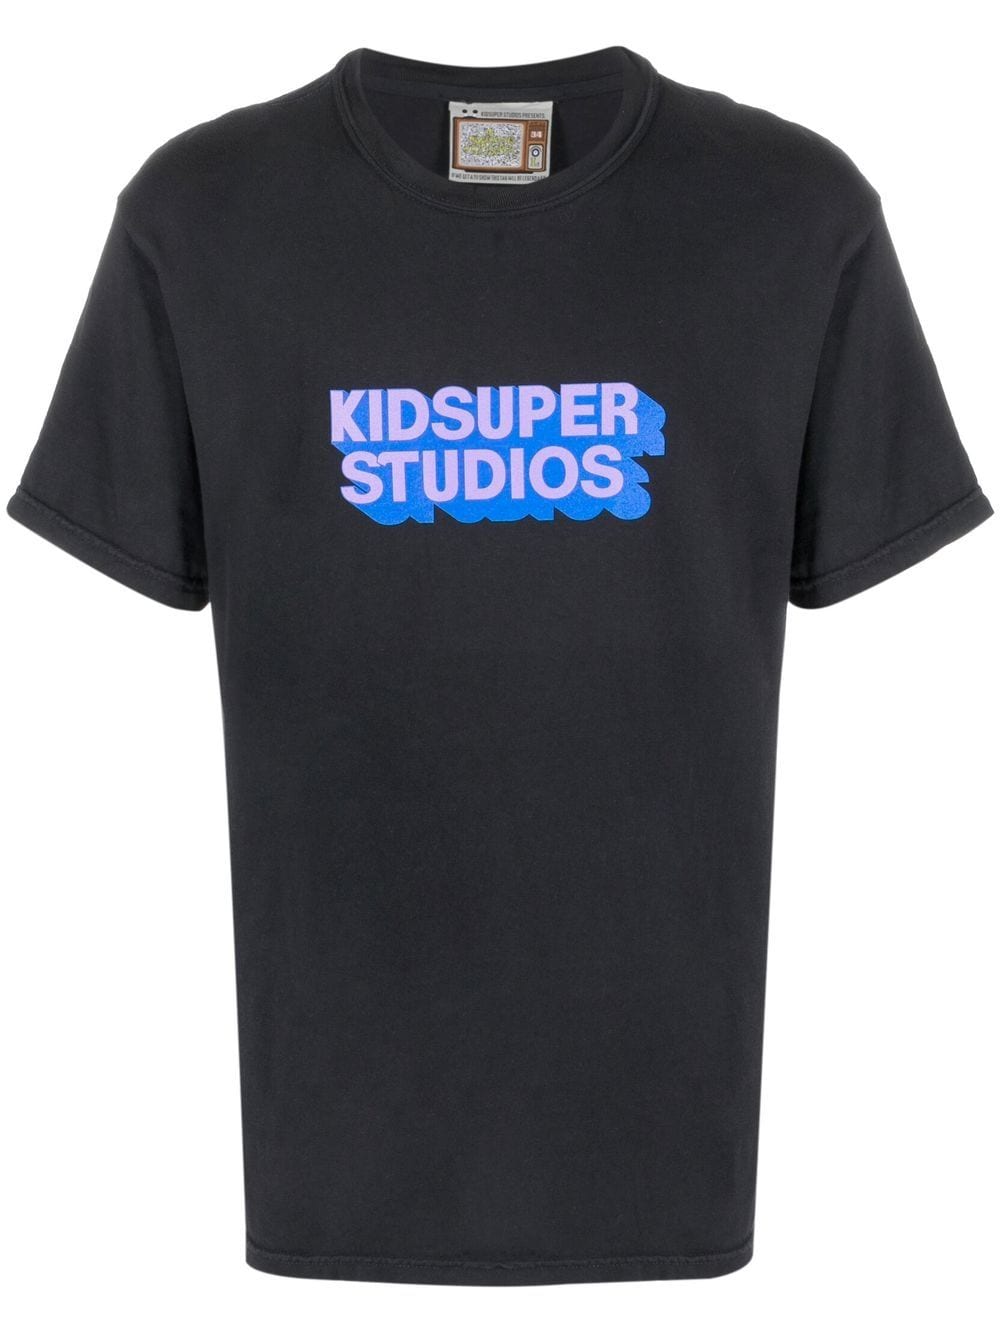 KIDSUPER KIDSUPER- Studios Cotton T-shirt